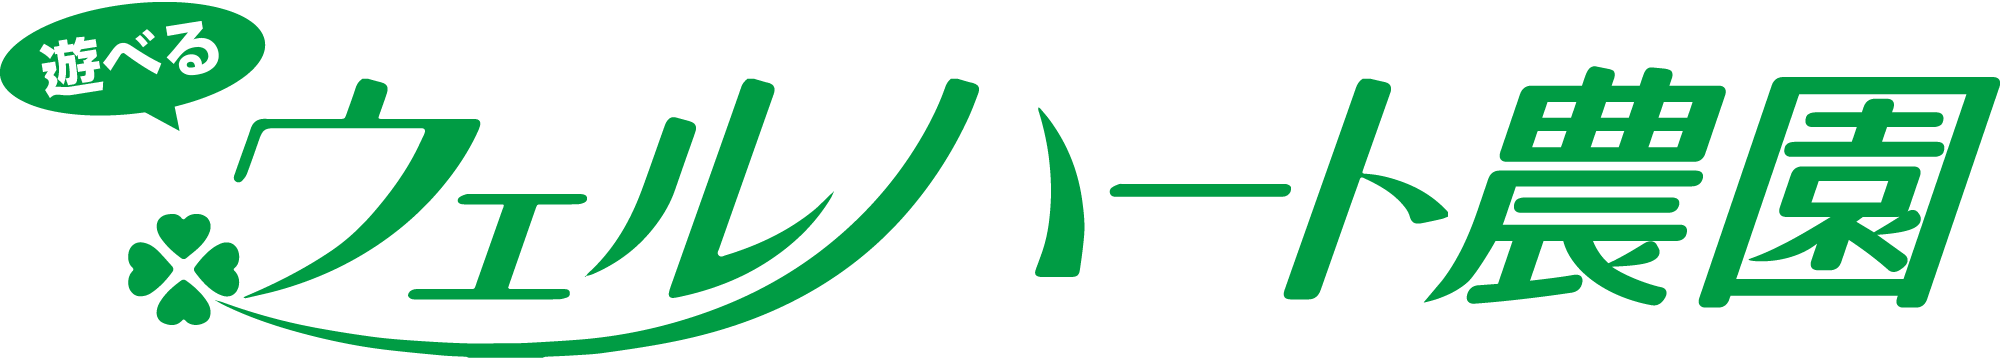 ウェルハート農園ロゴ